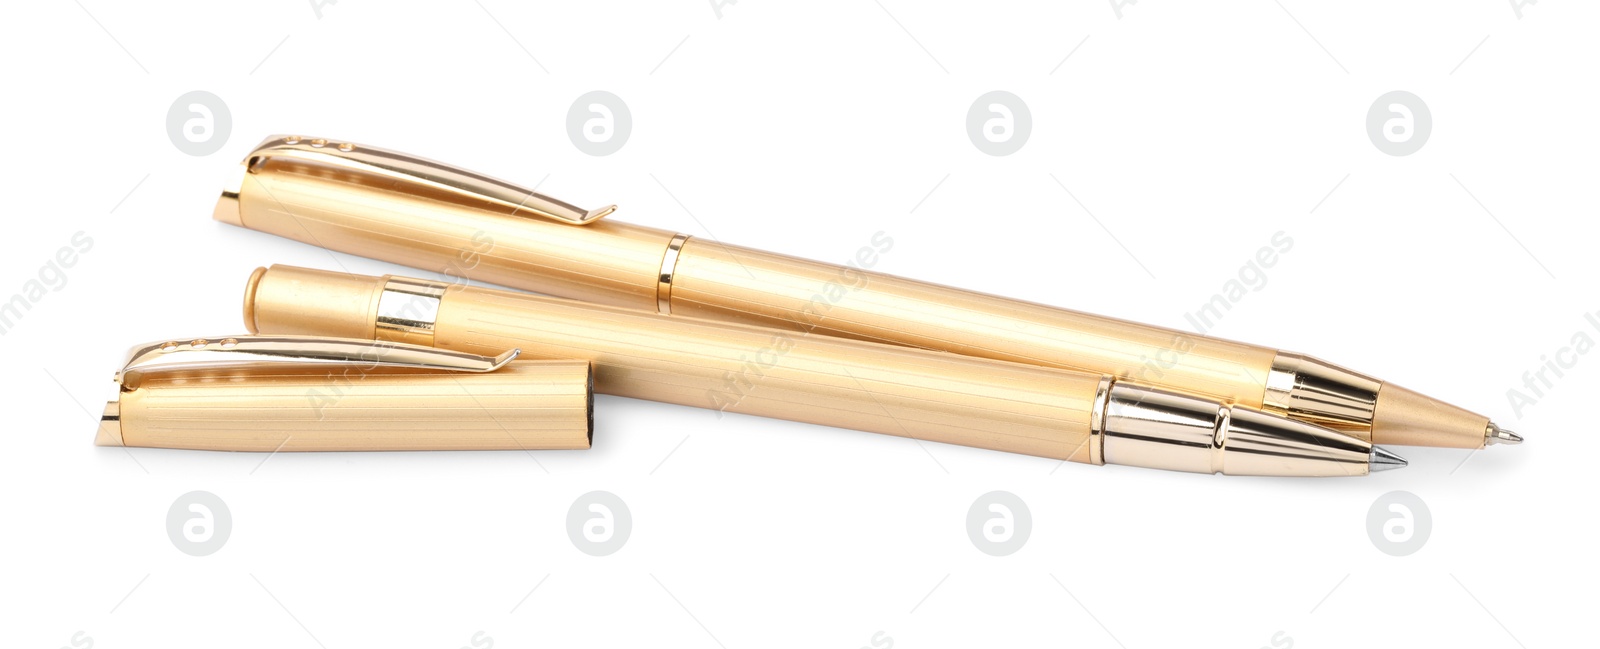 Photo of New stylish golden pens isolated on white